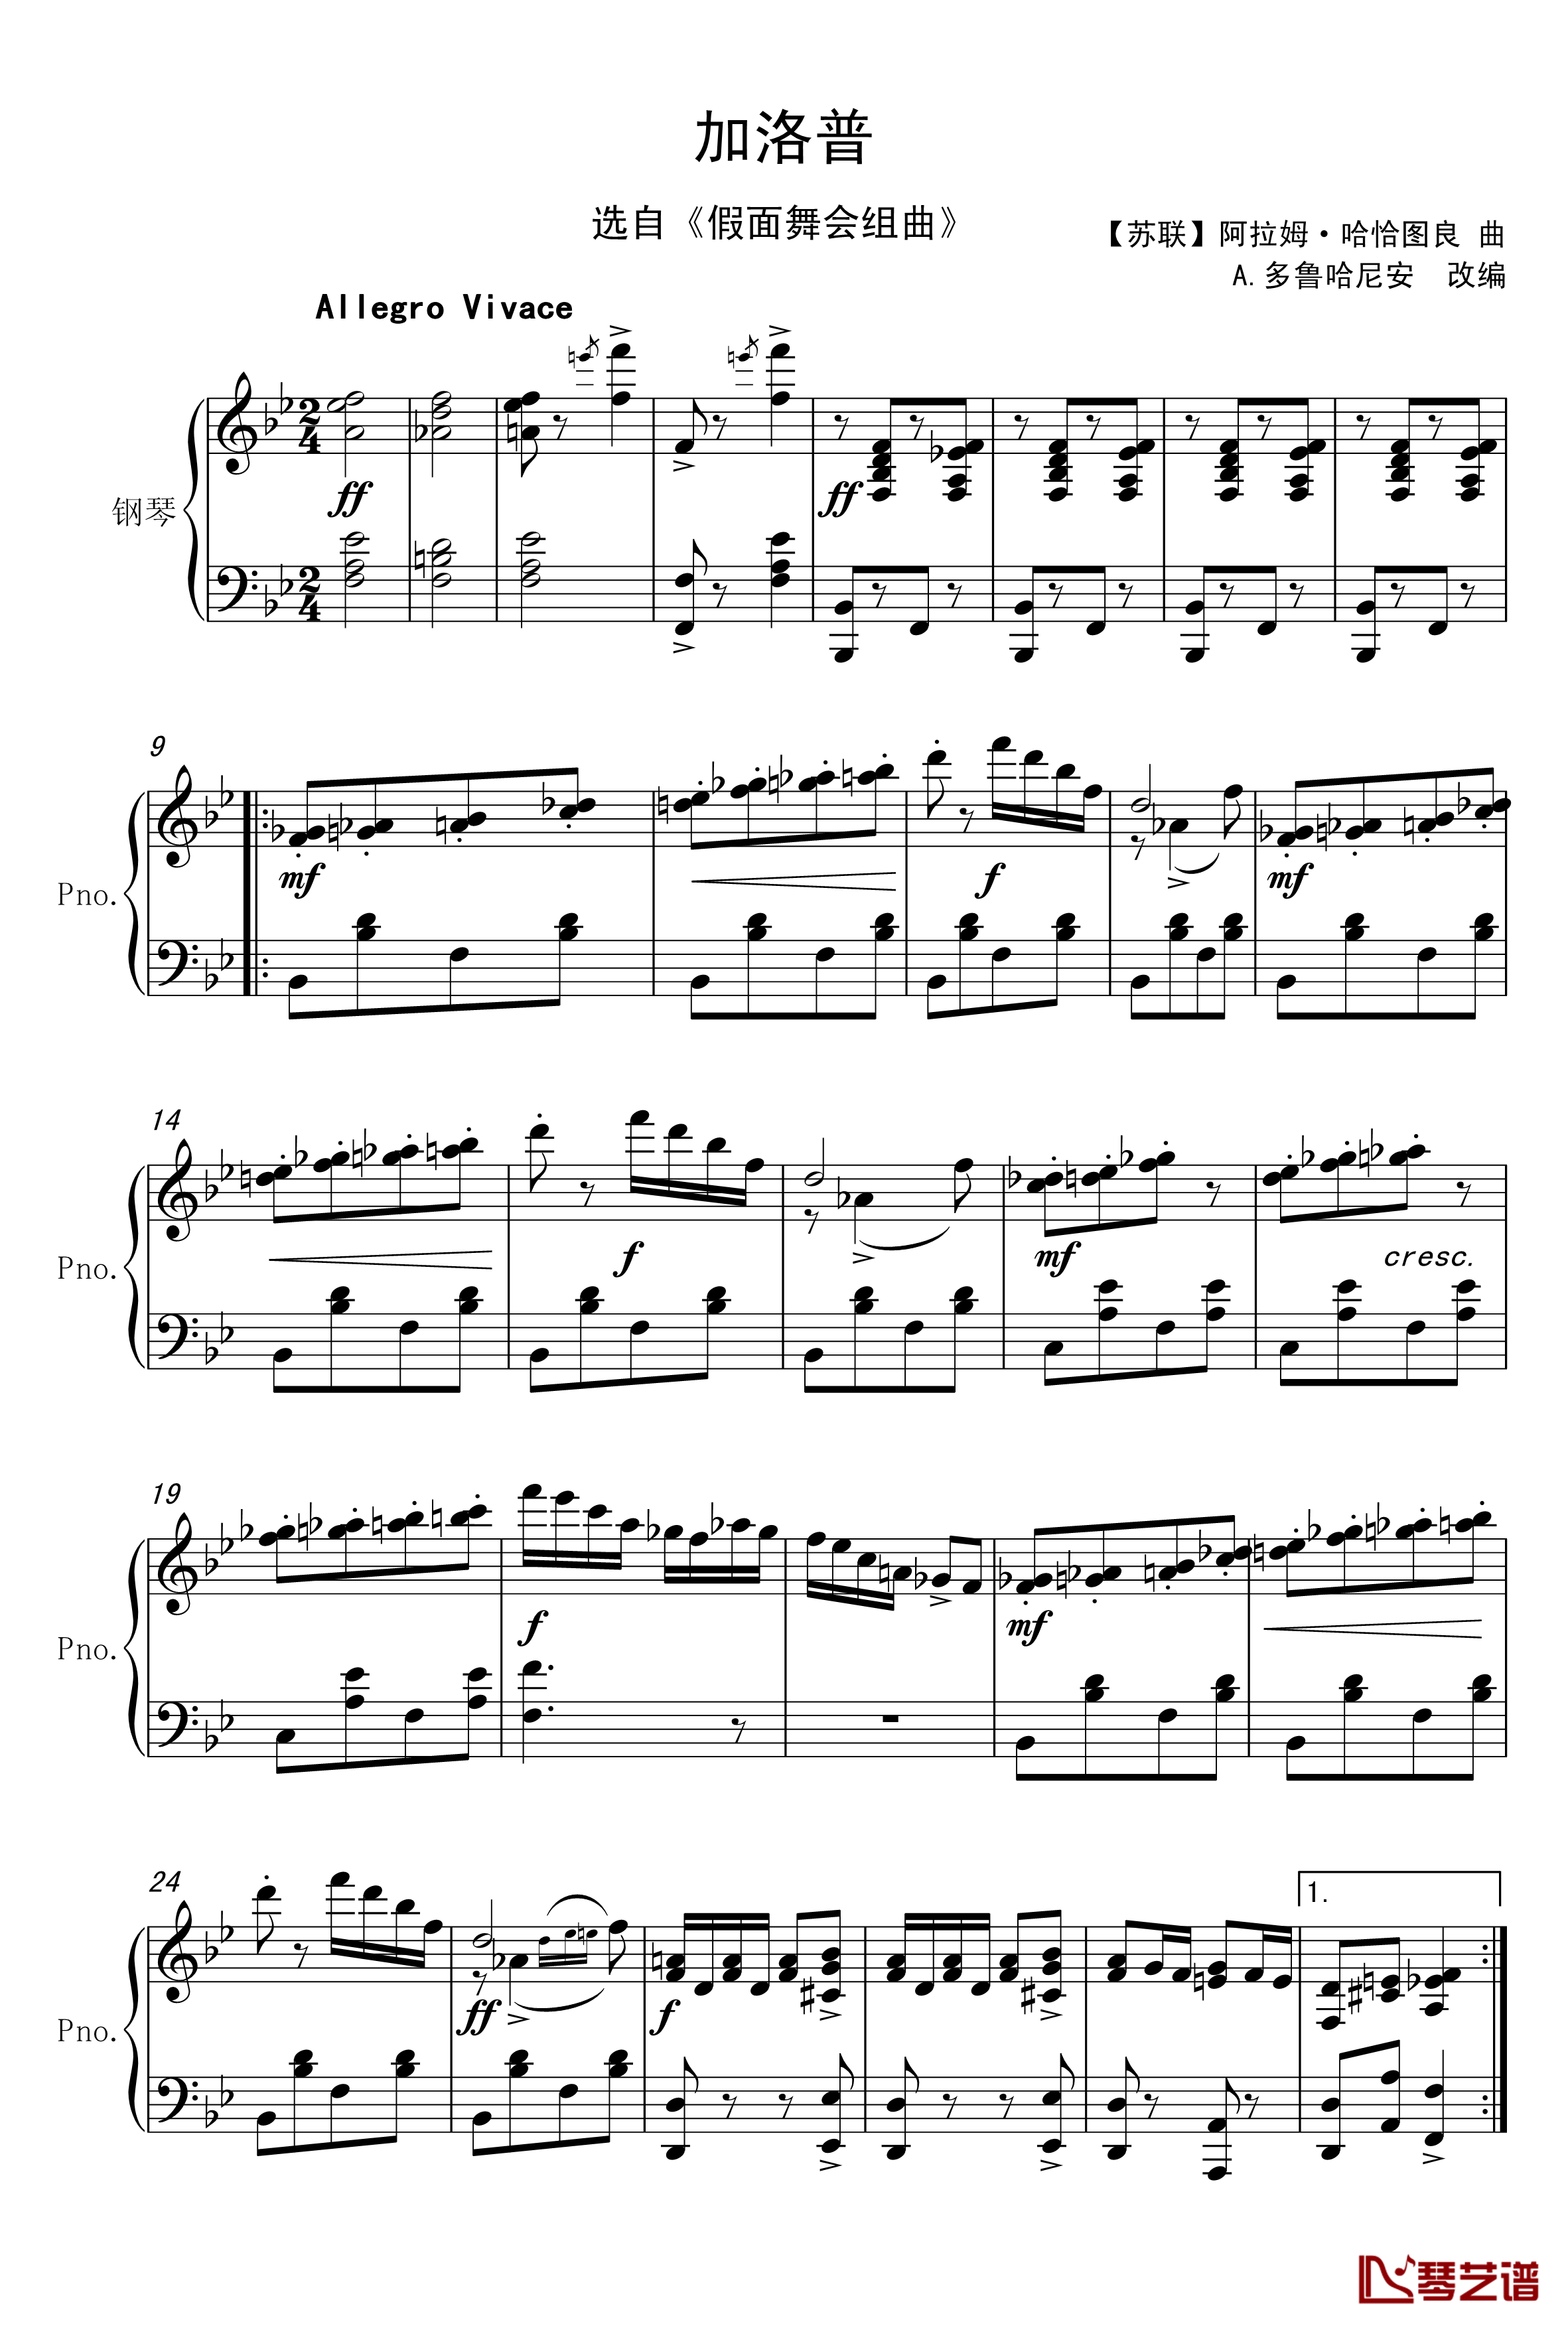 加洛普钢琴谱-哈恰图良1